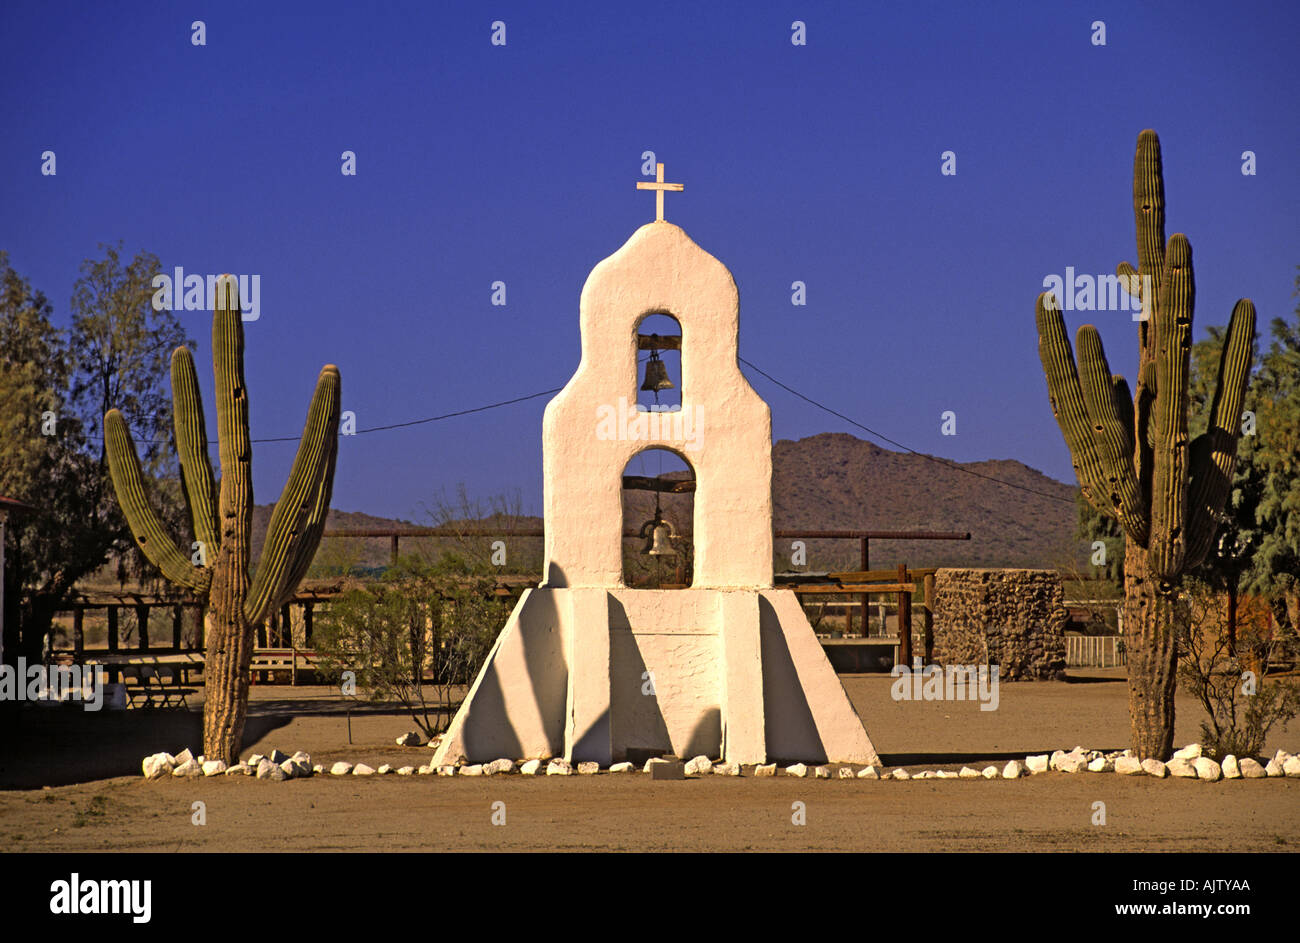 L'église paroissiale de St Anne beffroi, Gila River Indian Reservation, près de Chandler, Arizona, USA Banque D'Images